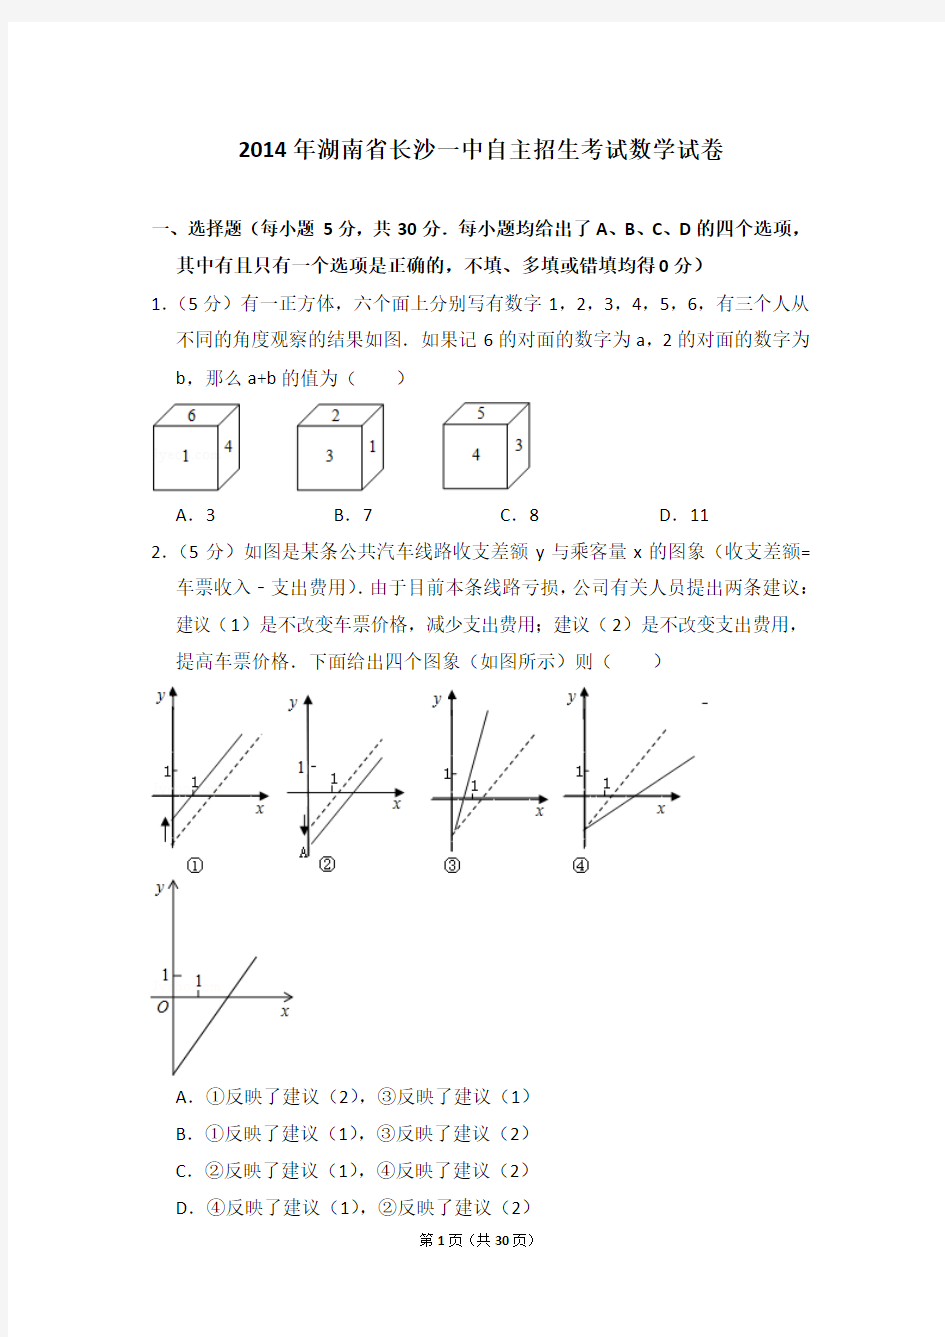 2014年湖南省长沙一中自主招生考试数学试卷及详细试卷解析